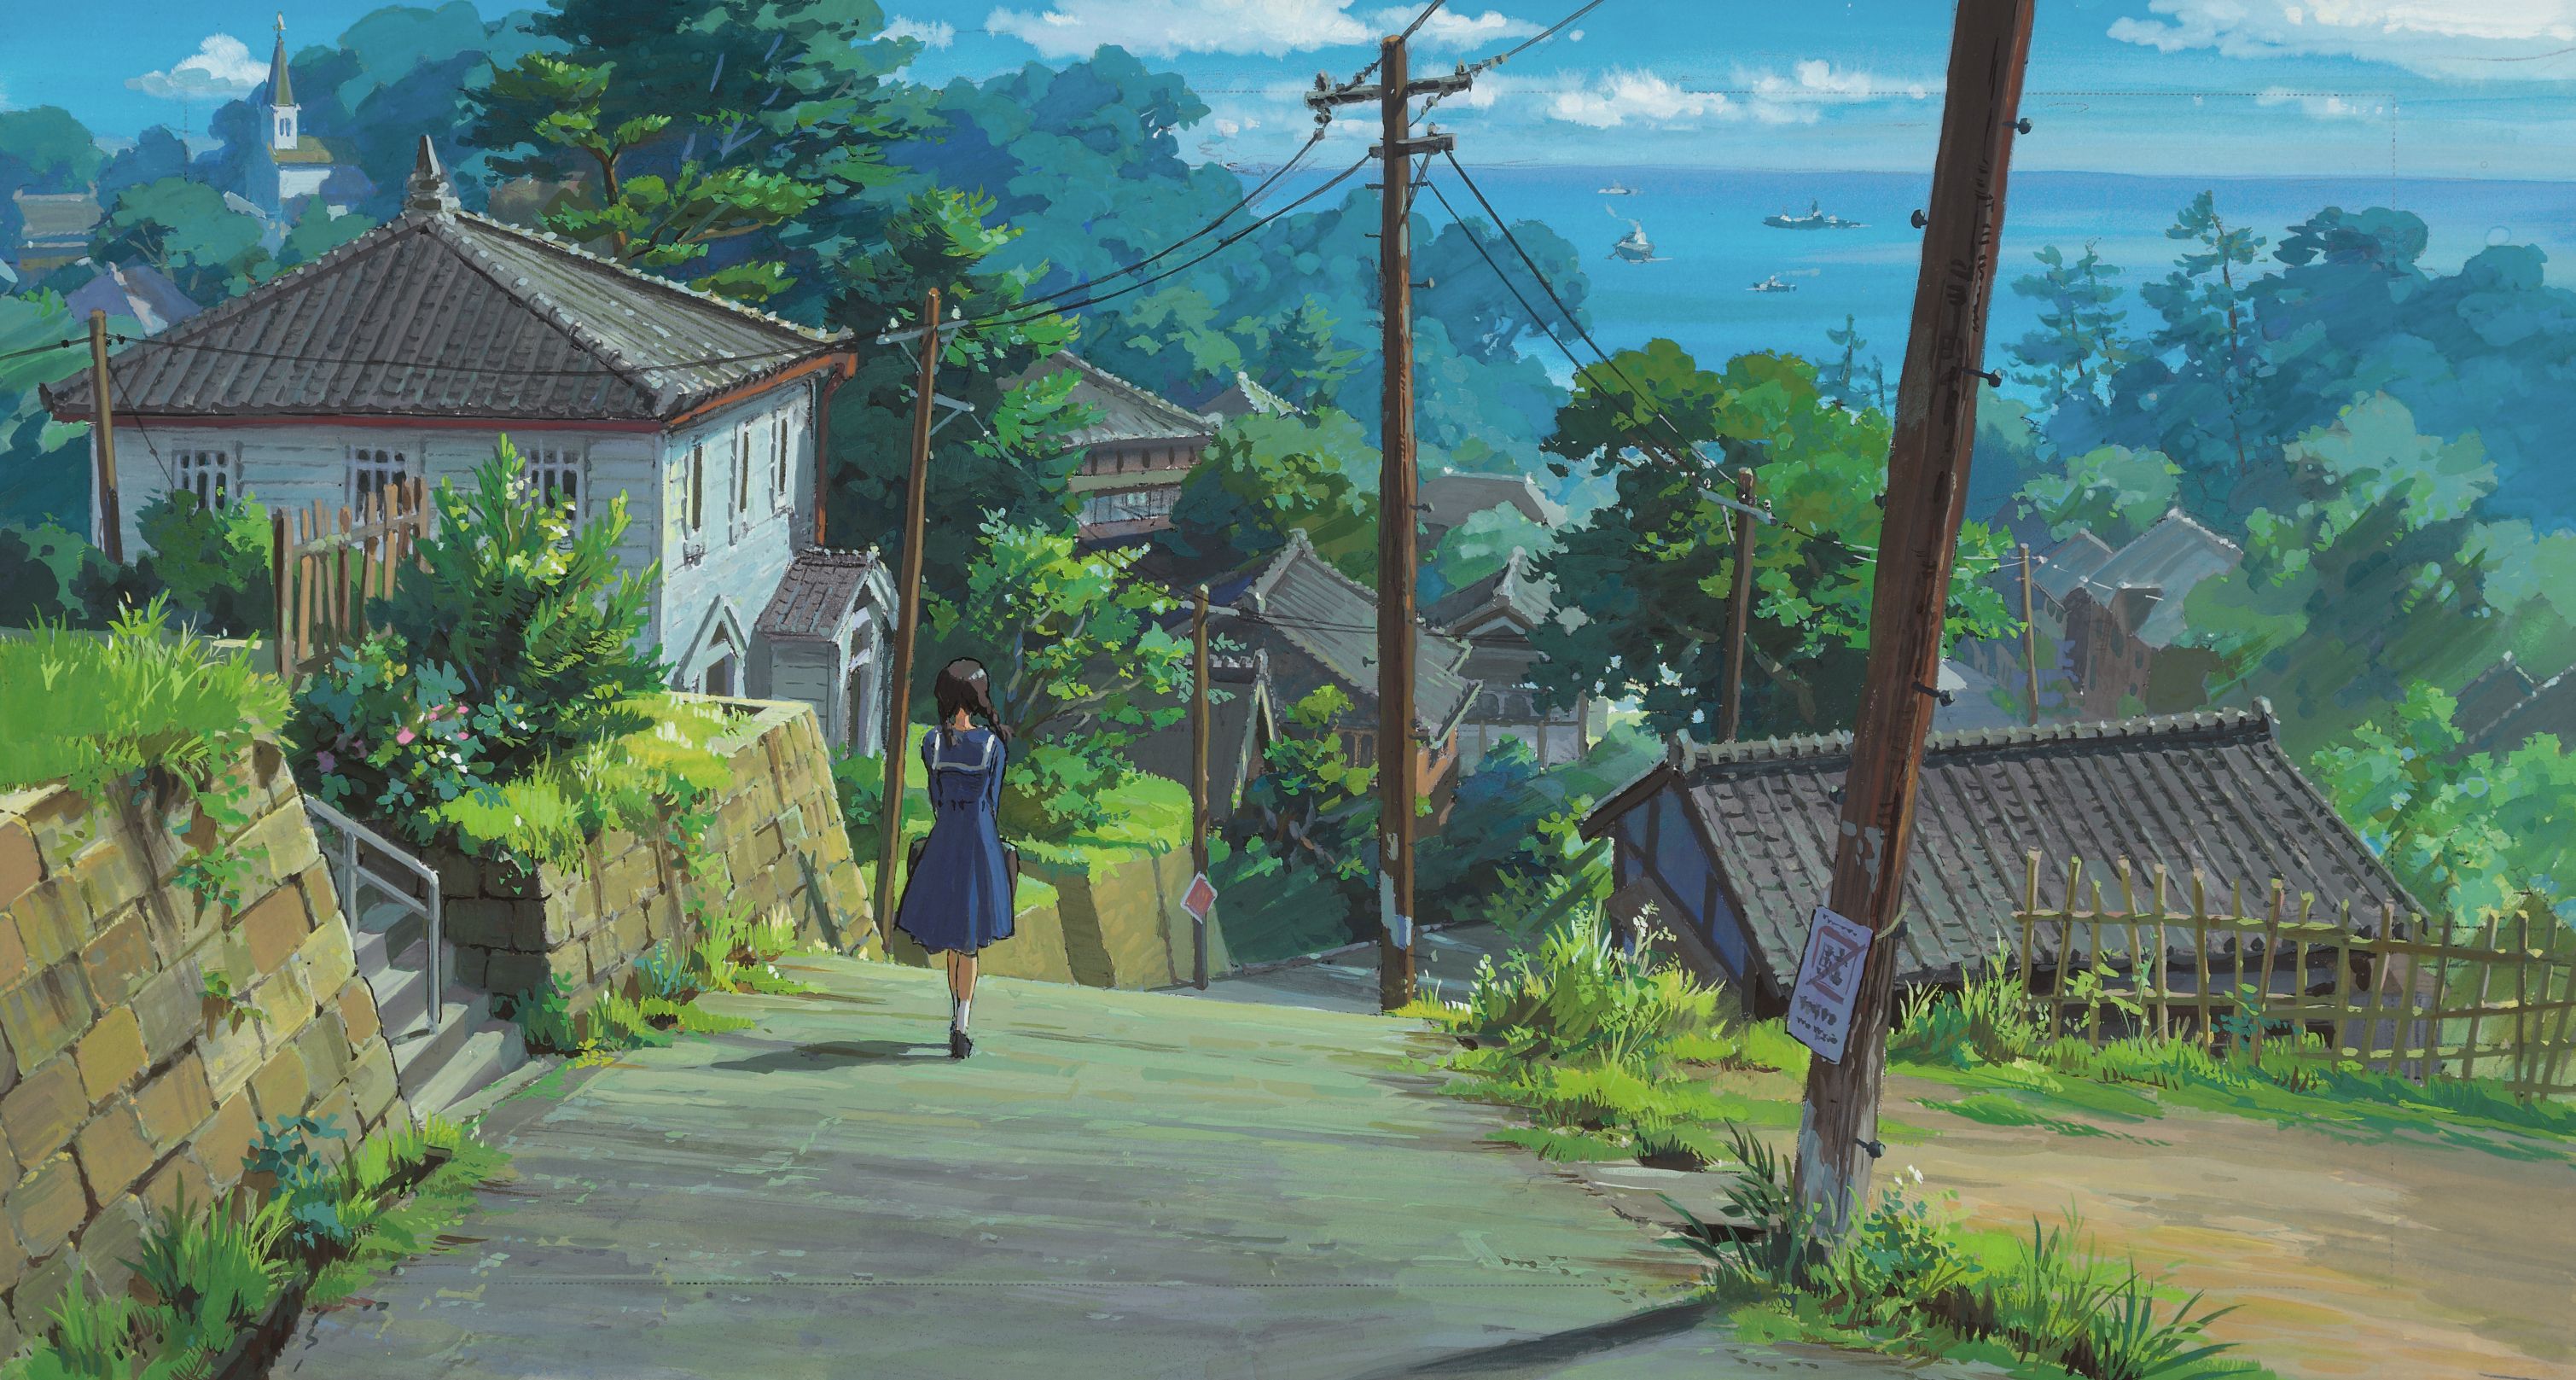 Zastaki.com - Аниме мультфильм Миядзаки, девушка идёт по дороге